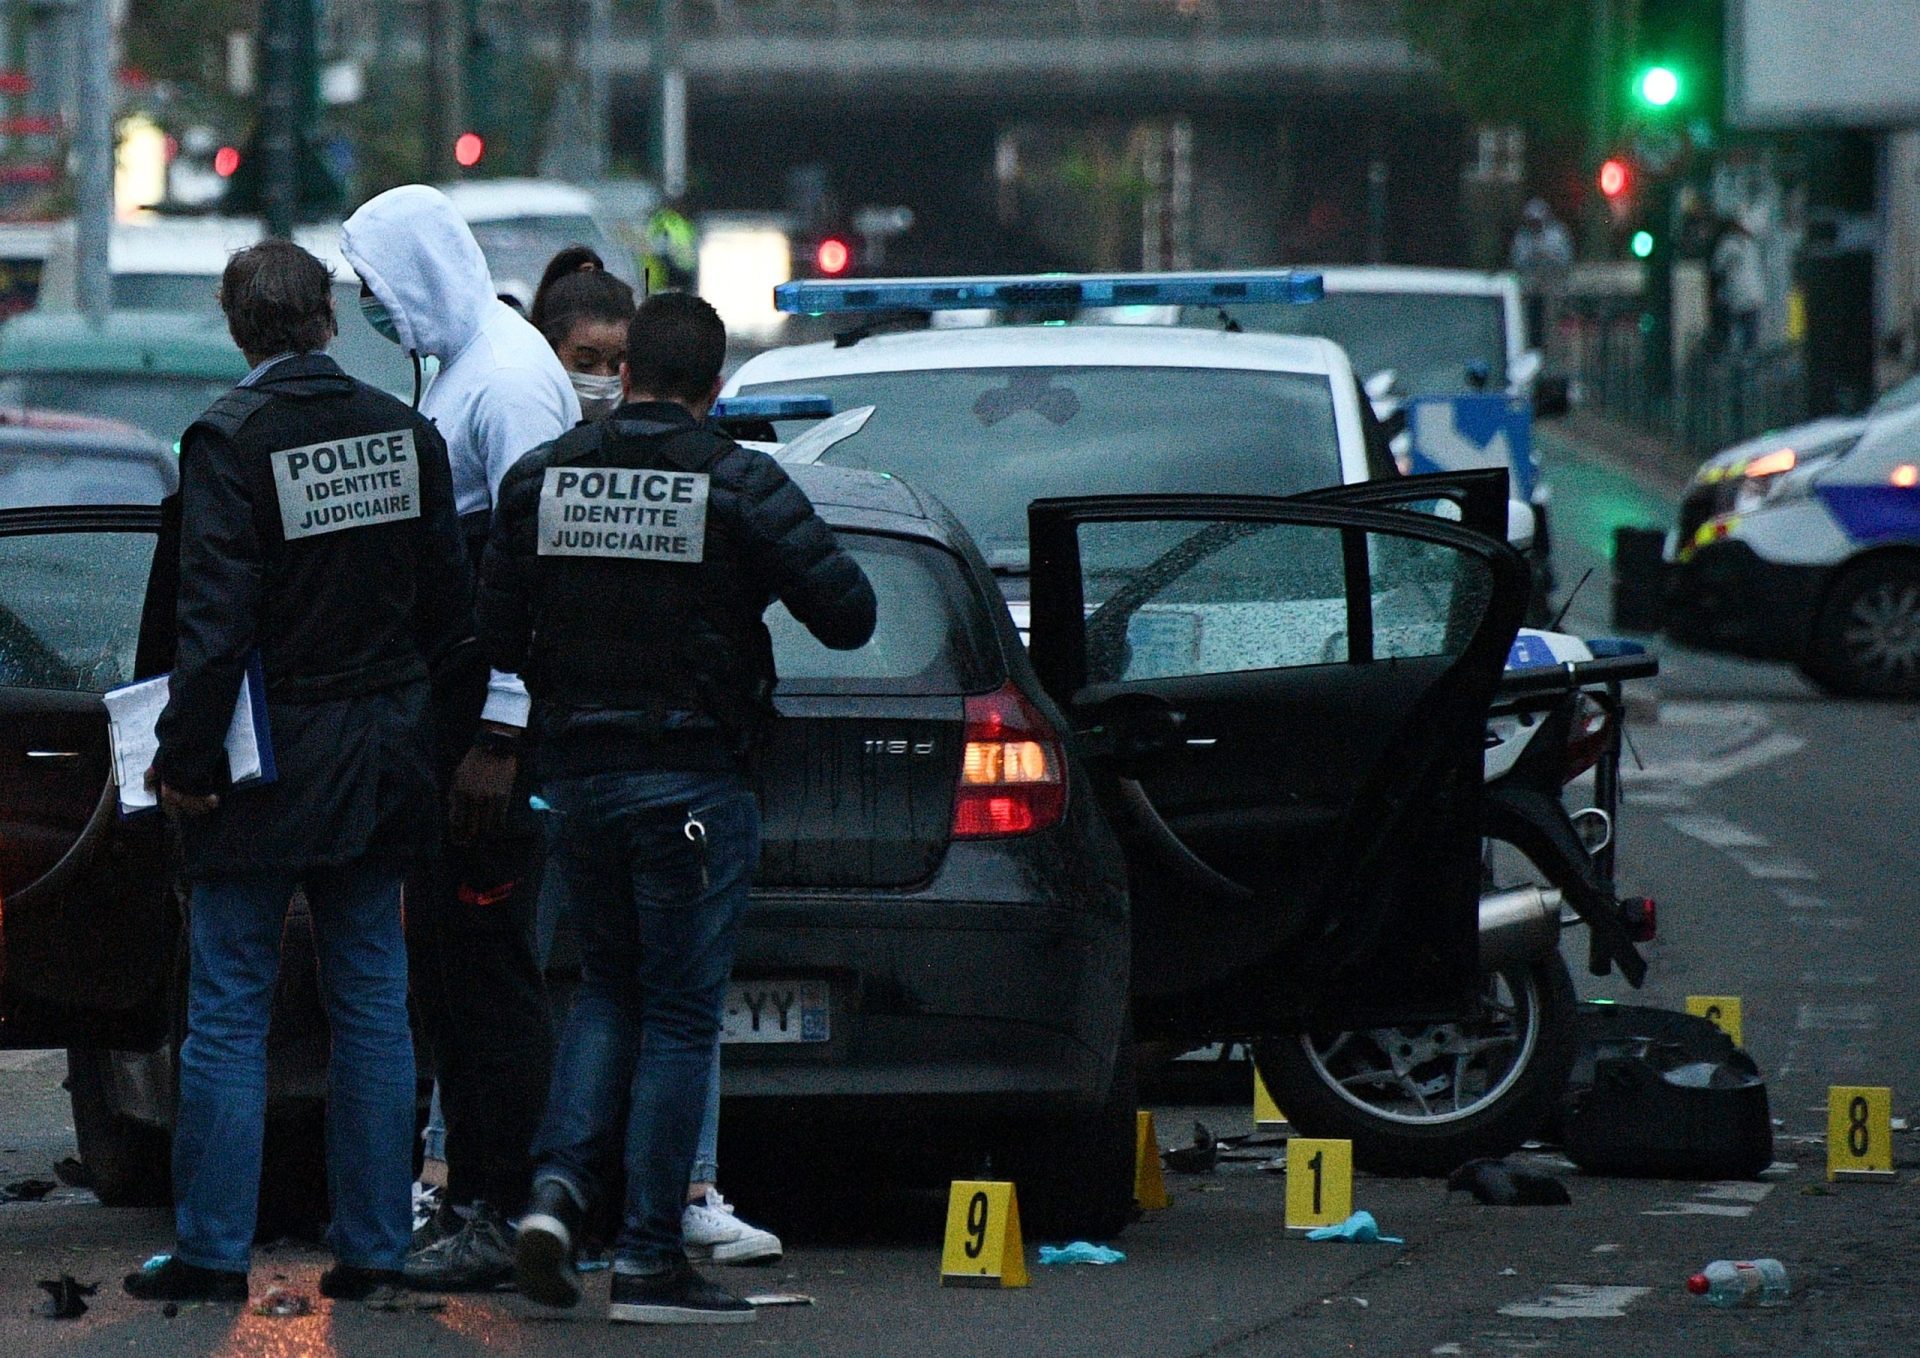 França investiga possível ataque terrorista após atropelamento de três polícias nos arredores de Paris